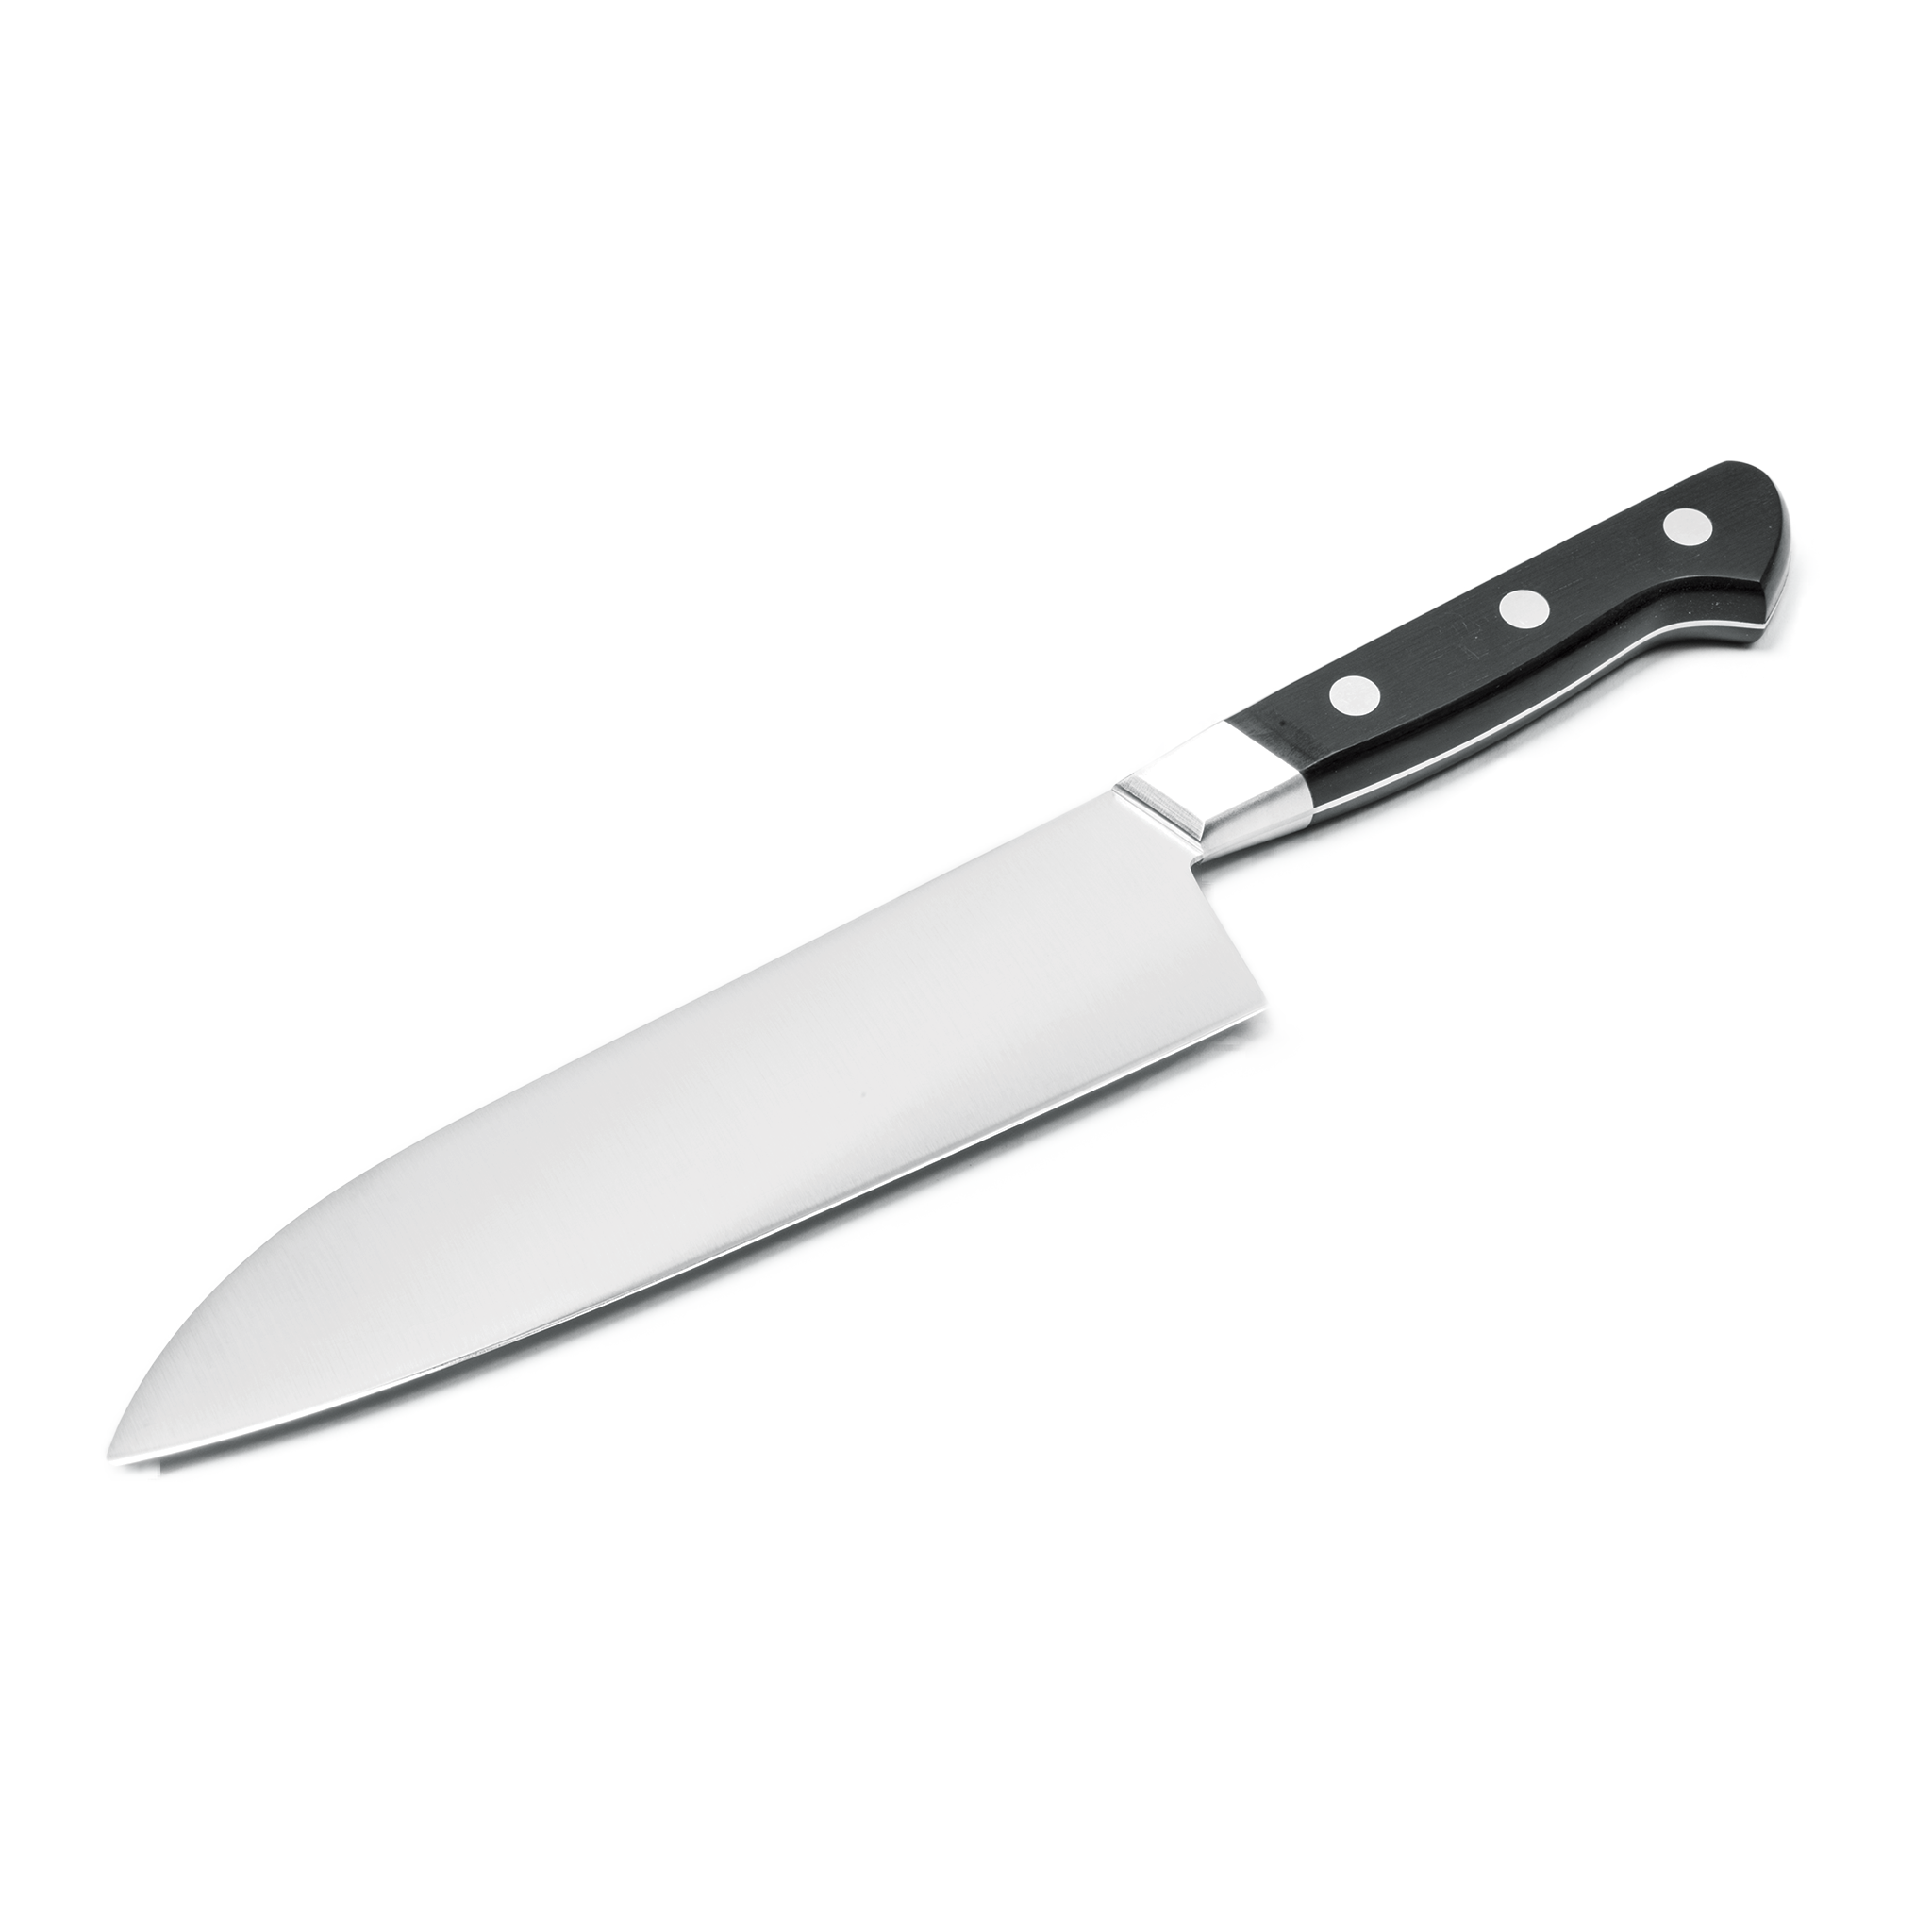 ملف Blade PNG بسكين